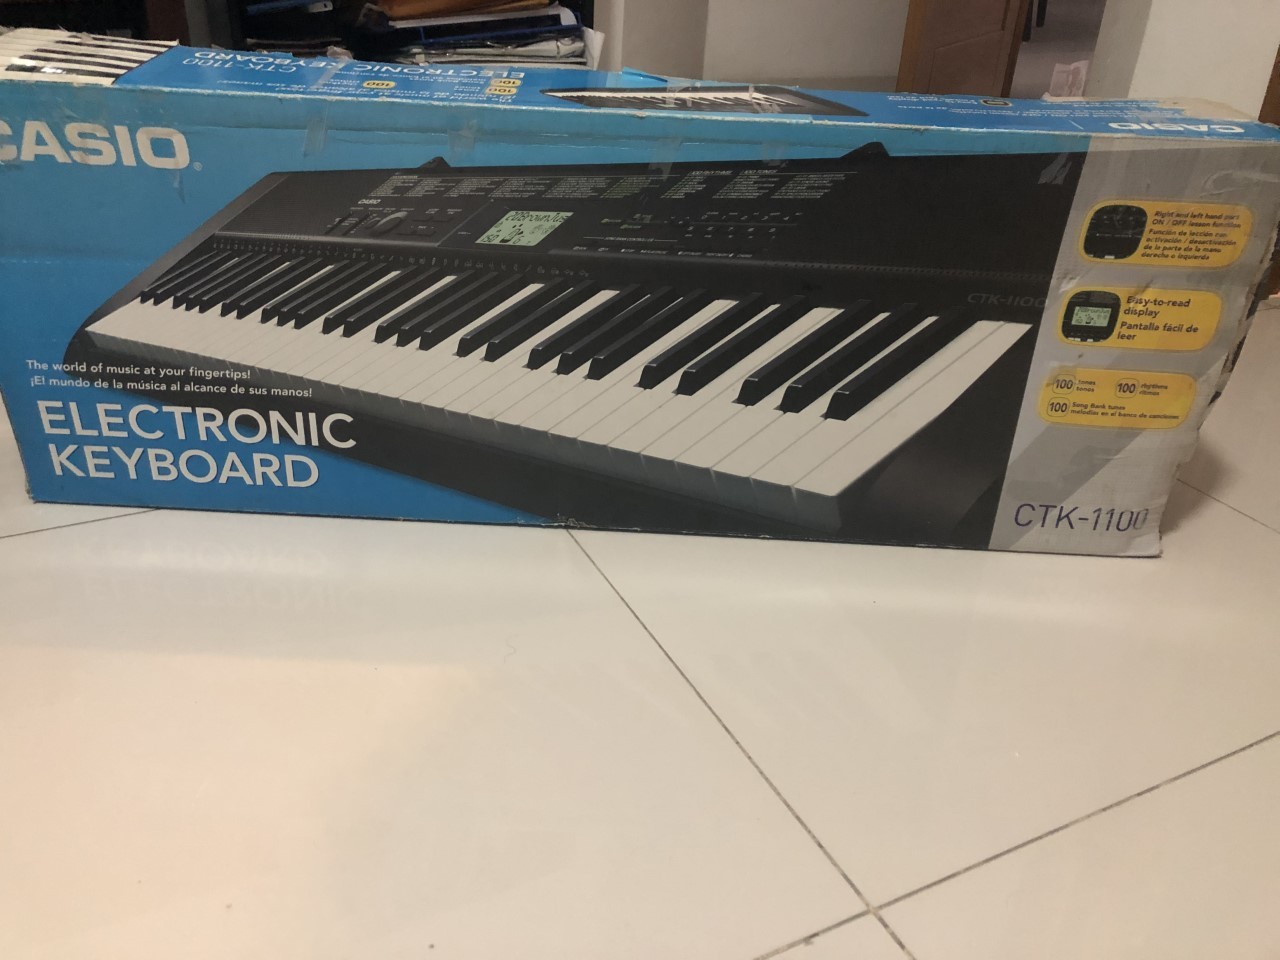 instrumentos musicales - Vendo teclado electrónico como nuevo Casio CTK-1100 ideal para tocar y practicar